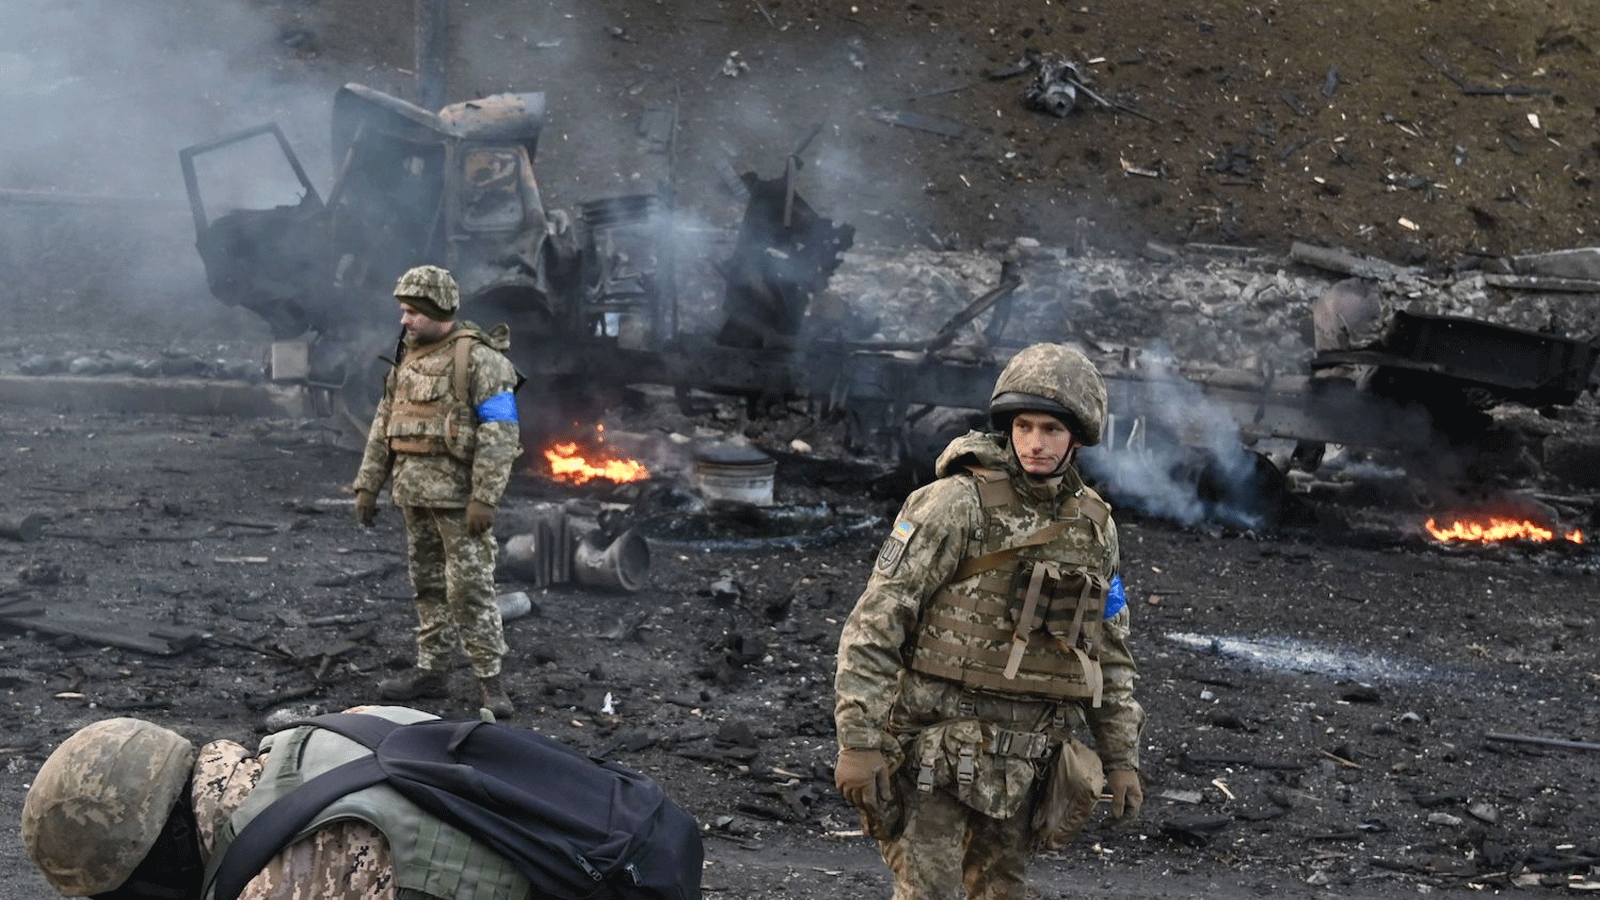 جنود أوكرانيون يبحثون عن قذائف غير منفجرة بعد اشتباك مع مجموعة روسية في كييف صباح السبت 12 آذار\ مارس 2022